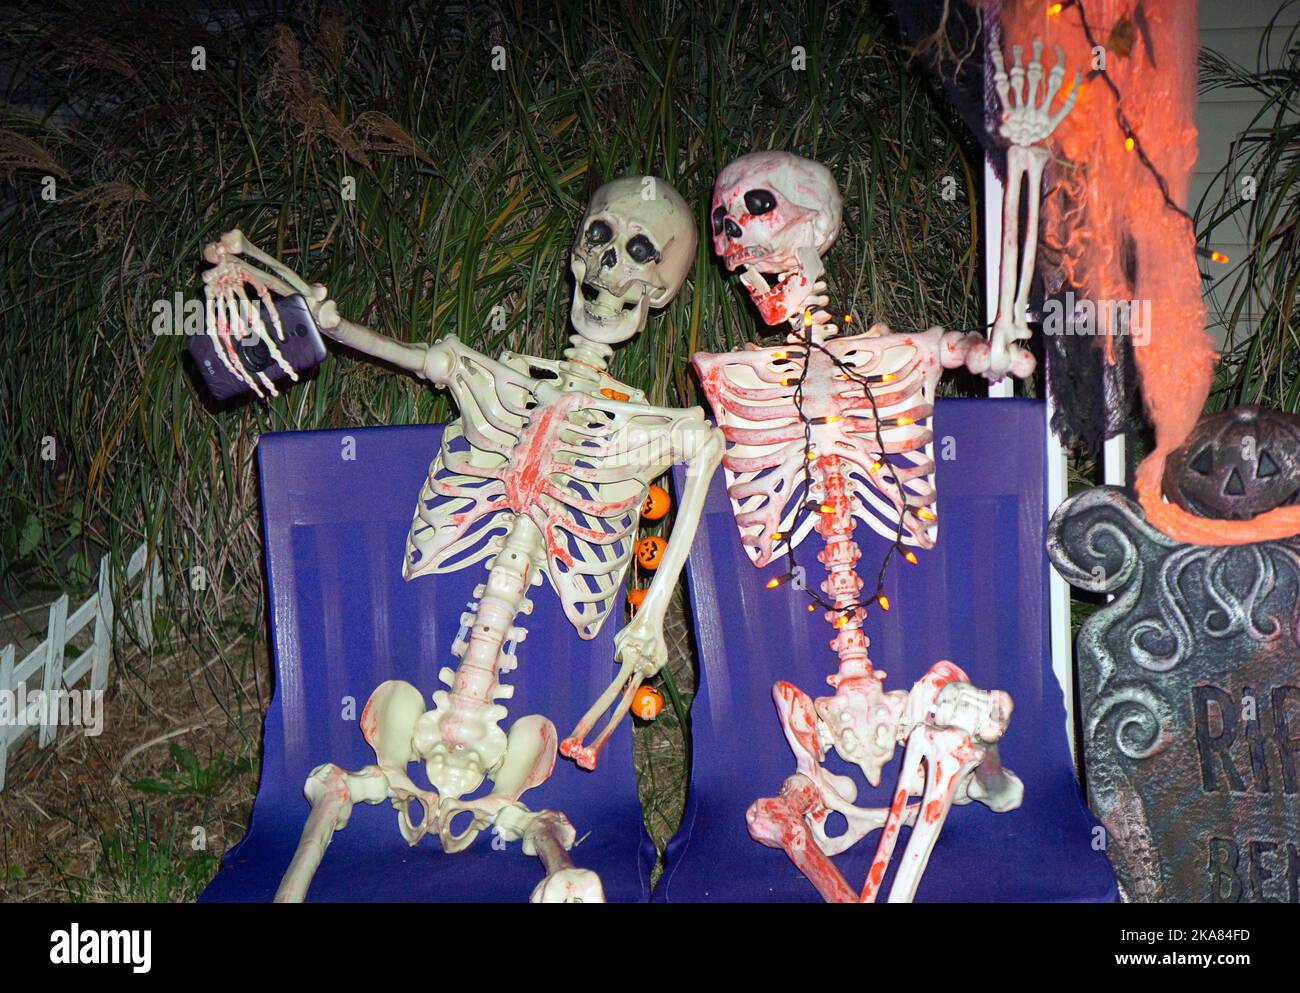 Una decorazione divertente del prato di Halloween che mostra 2 scheletri che prendono un selfie. A Flushing, regine, New York. Foto Stock